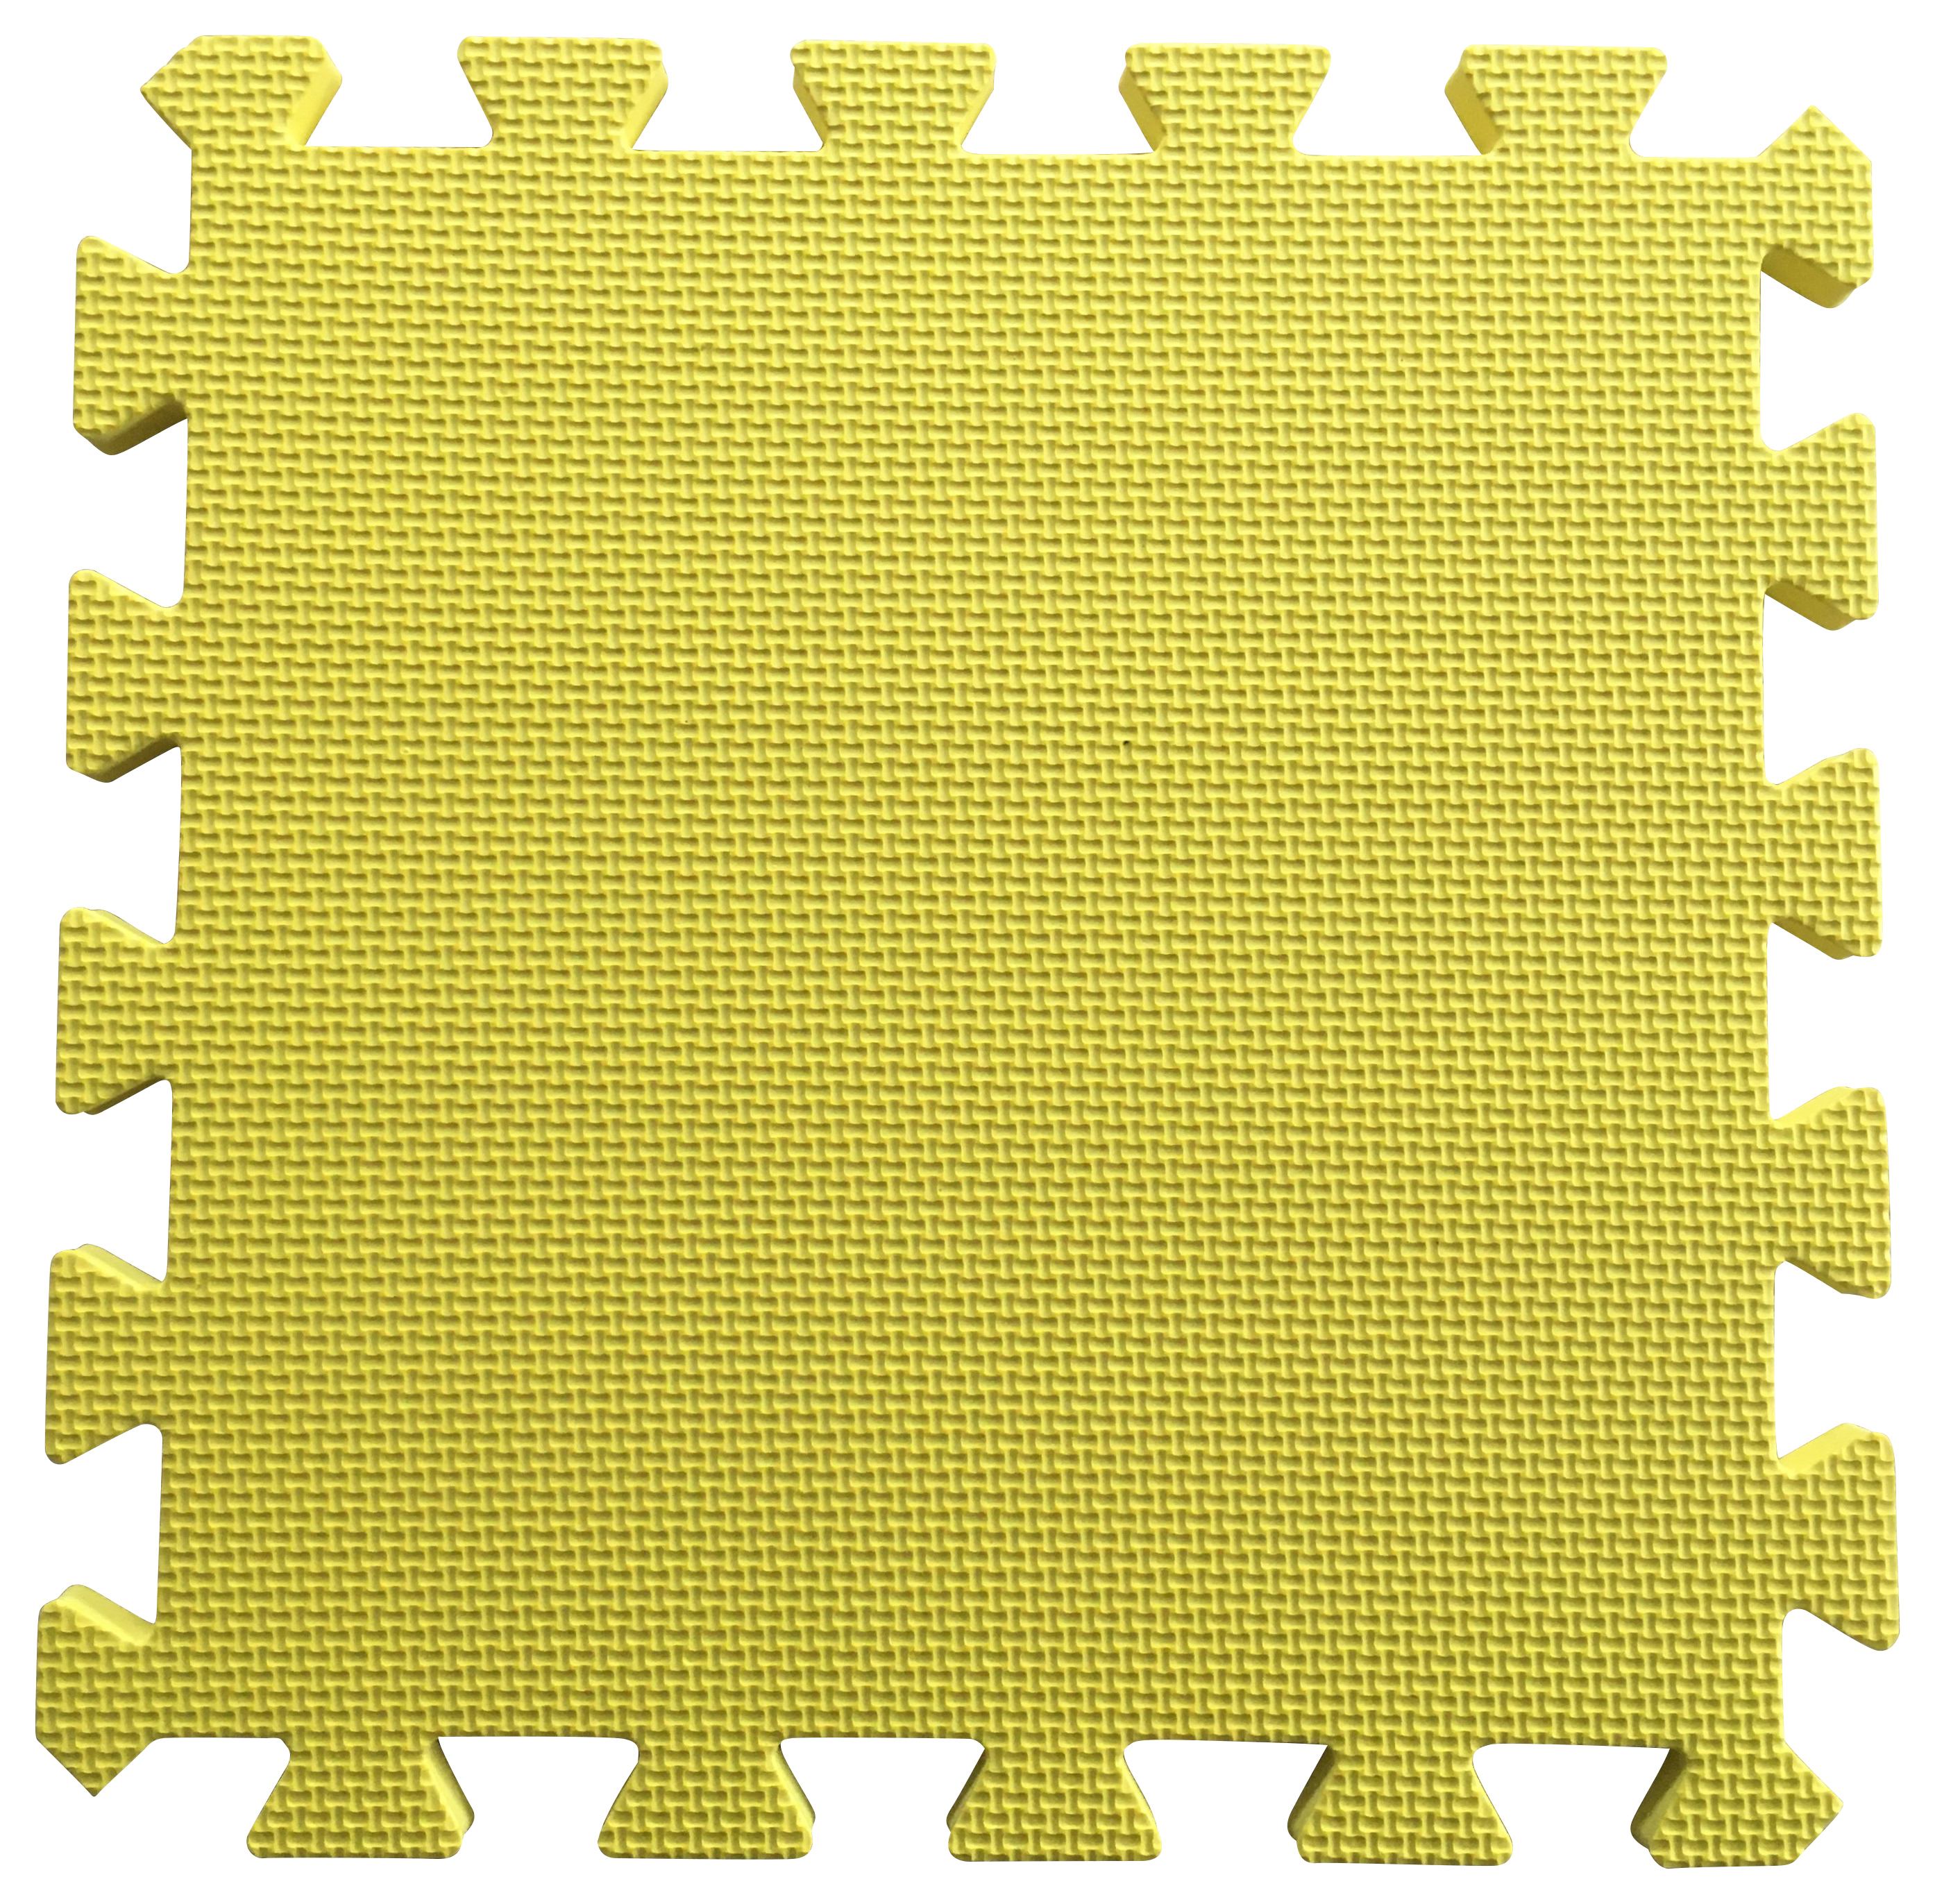 Warm Floor Yellow Interlocking Floor Tiles for Garden Buildings - 10 x 8ft